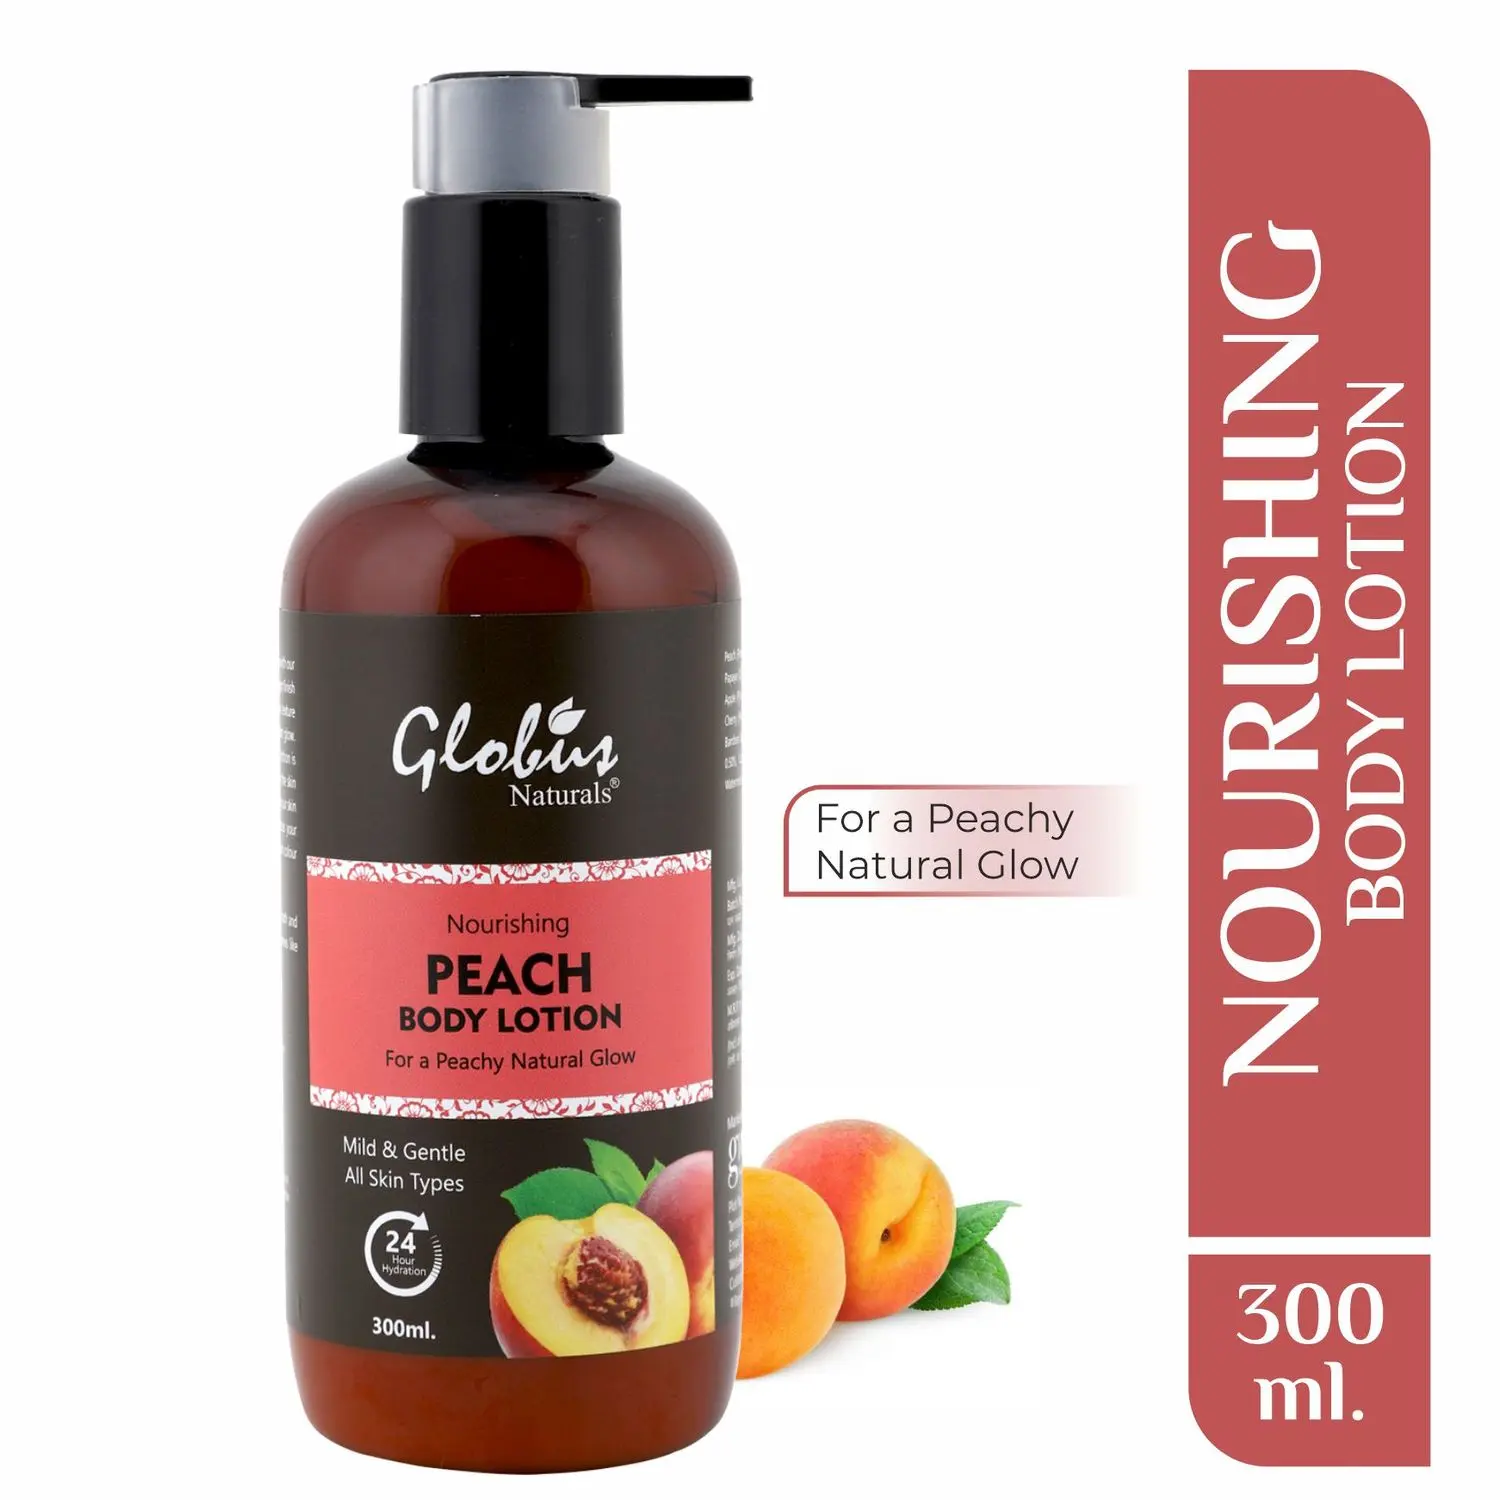 Globus Naturals Nourishing Peach Body Lotion (300 ml)